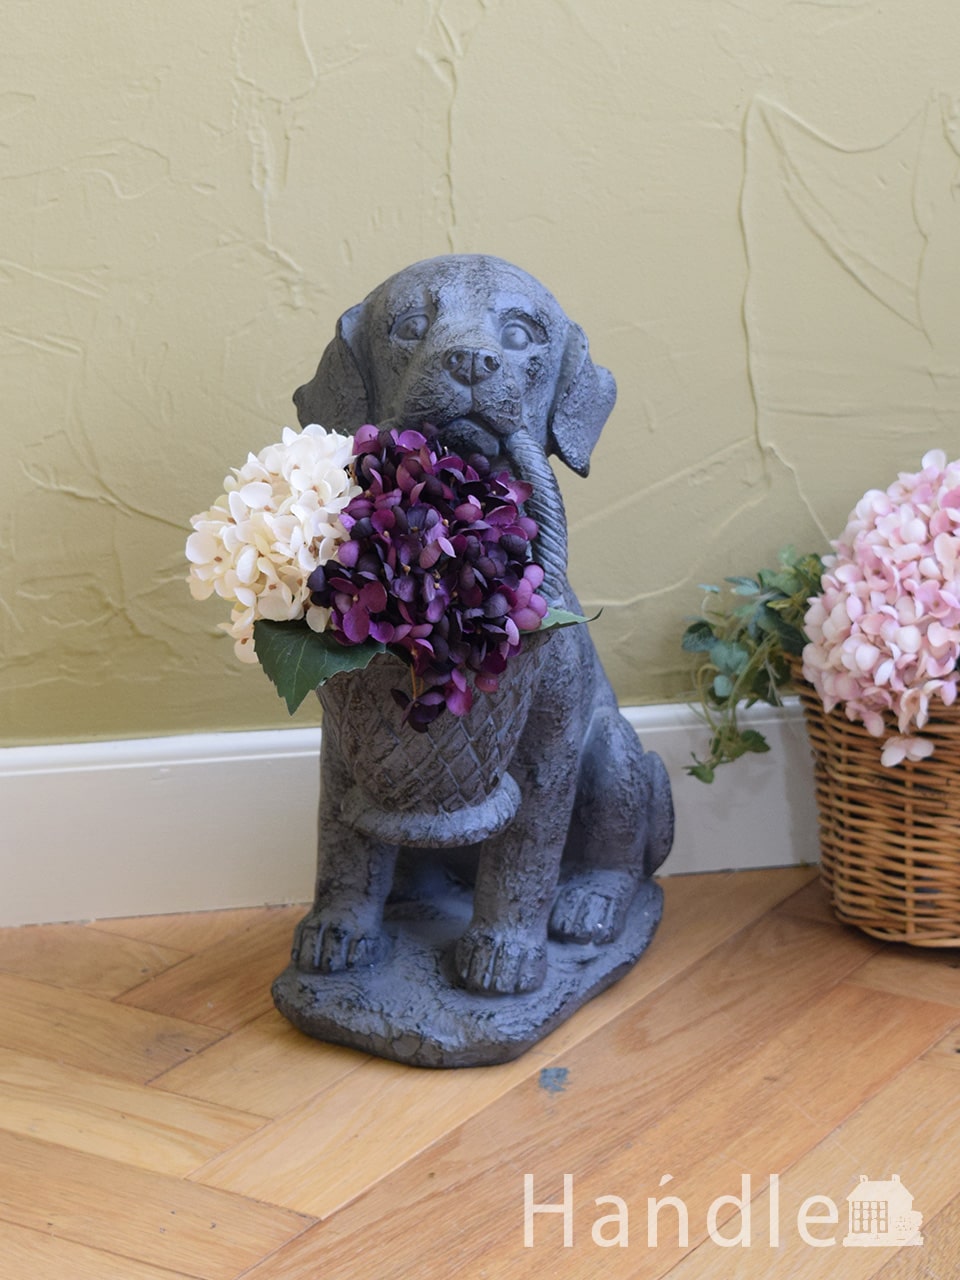 ヨーロッパの雰囲気漂うおしゃれなプランター、可愛い子犬モチーフのガーデニングポット花台 (n20-297)